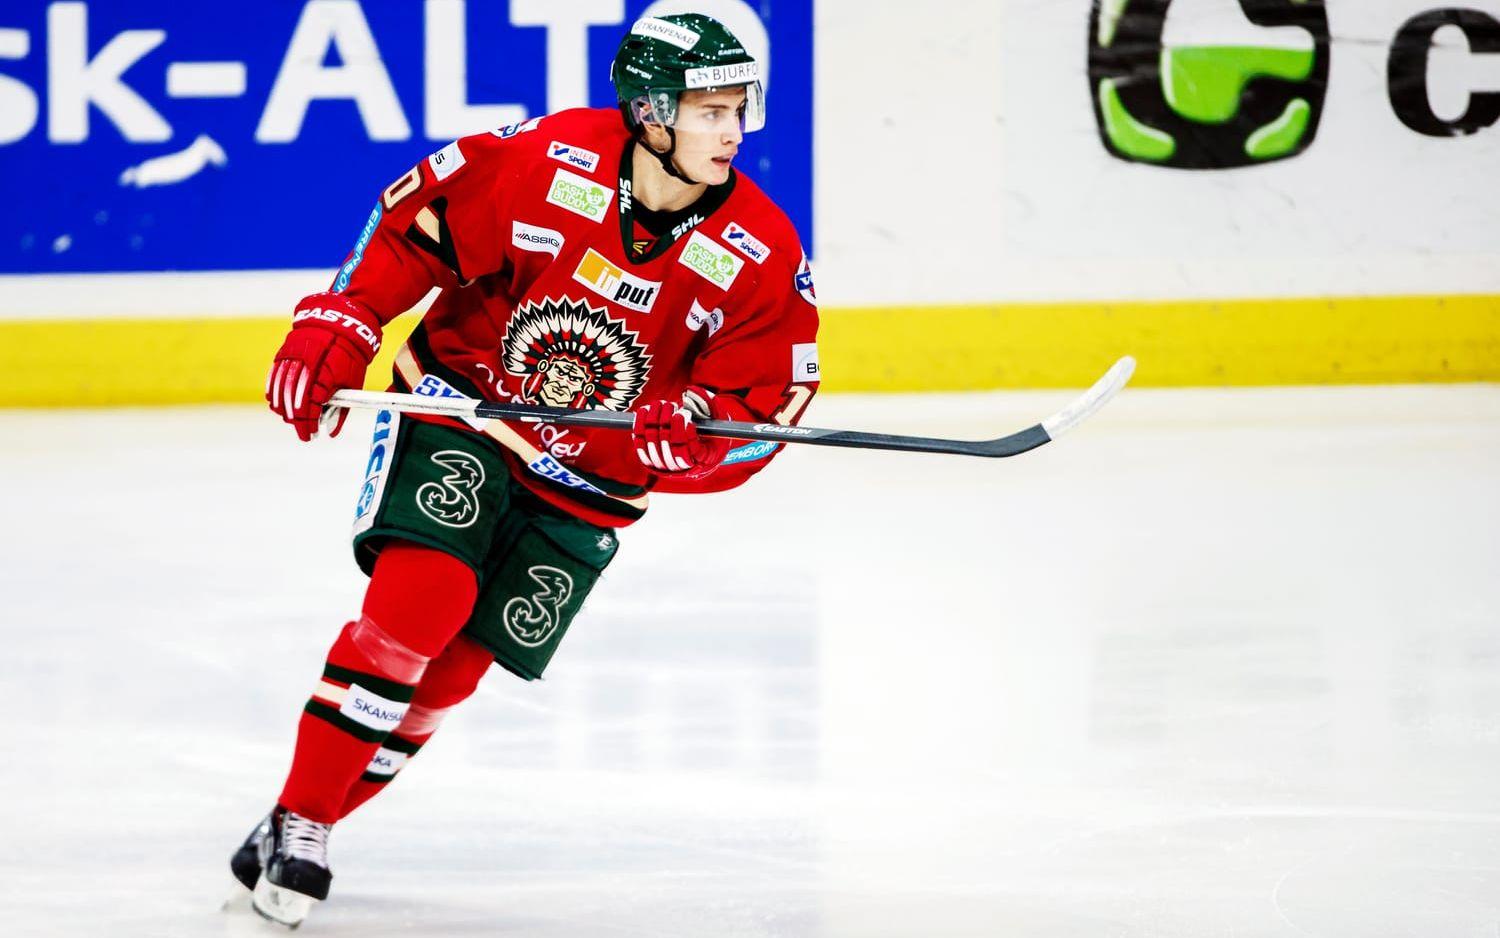 Innan Wennberg lämnade Sverige för Nordamerika spelade han en säsong tillsammans med Frölunda. Bild:Bildbyrån